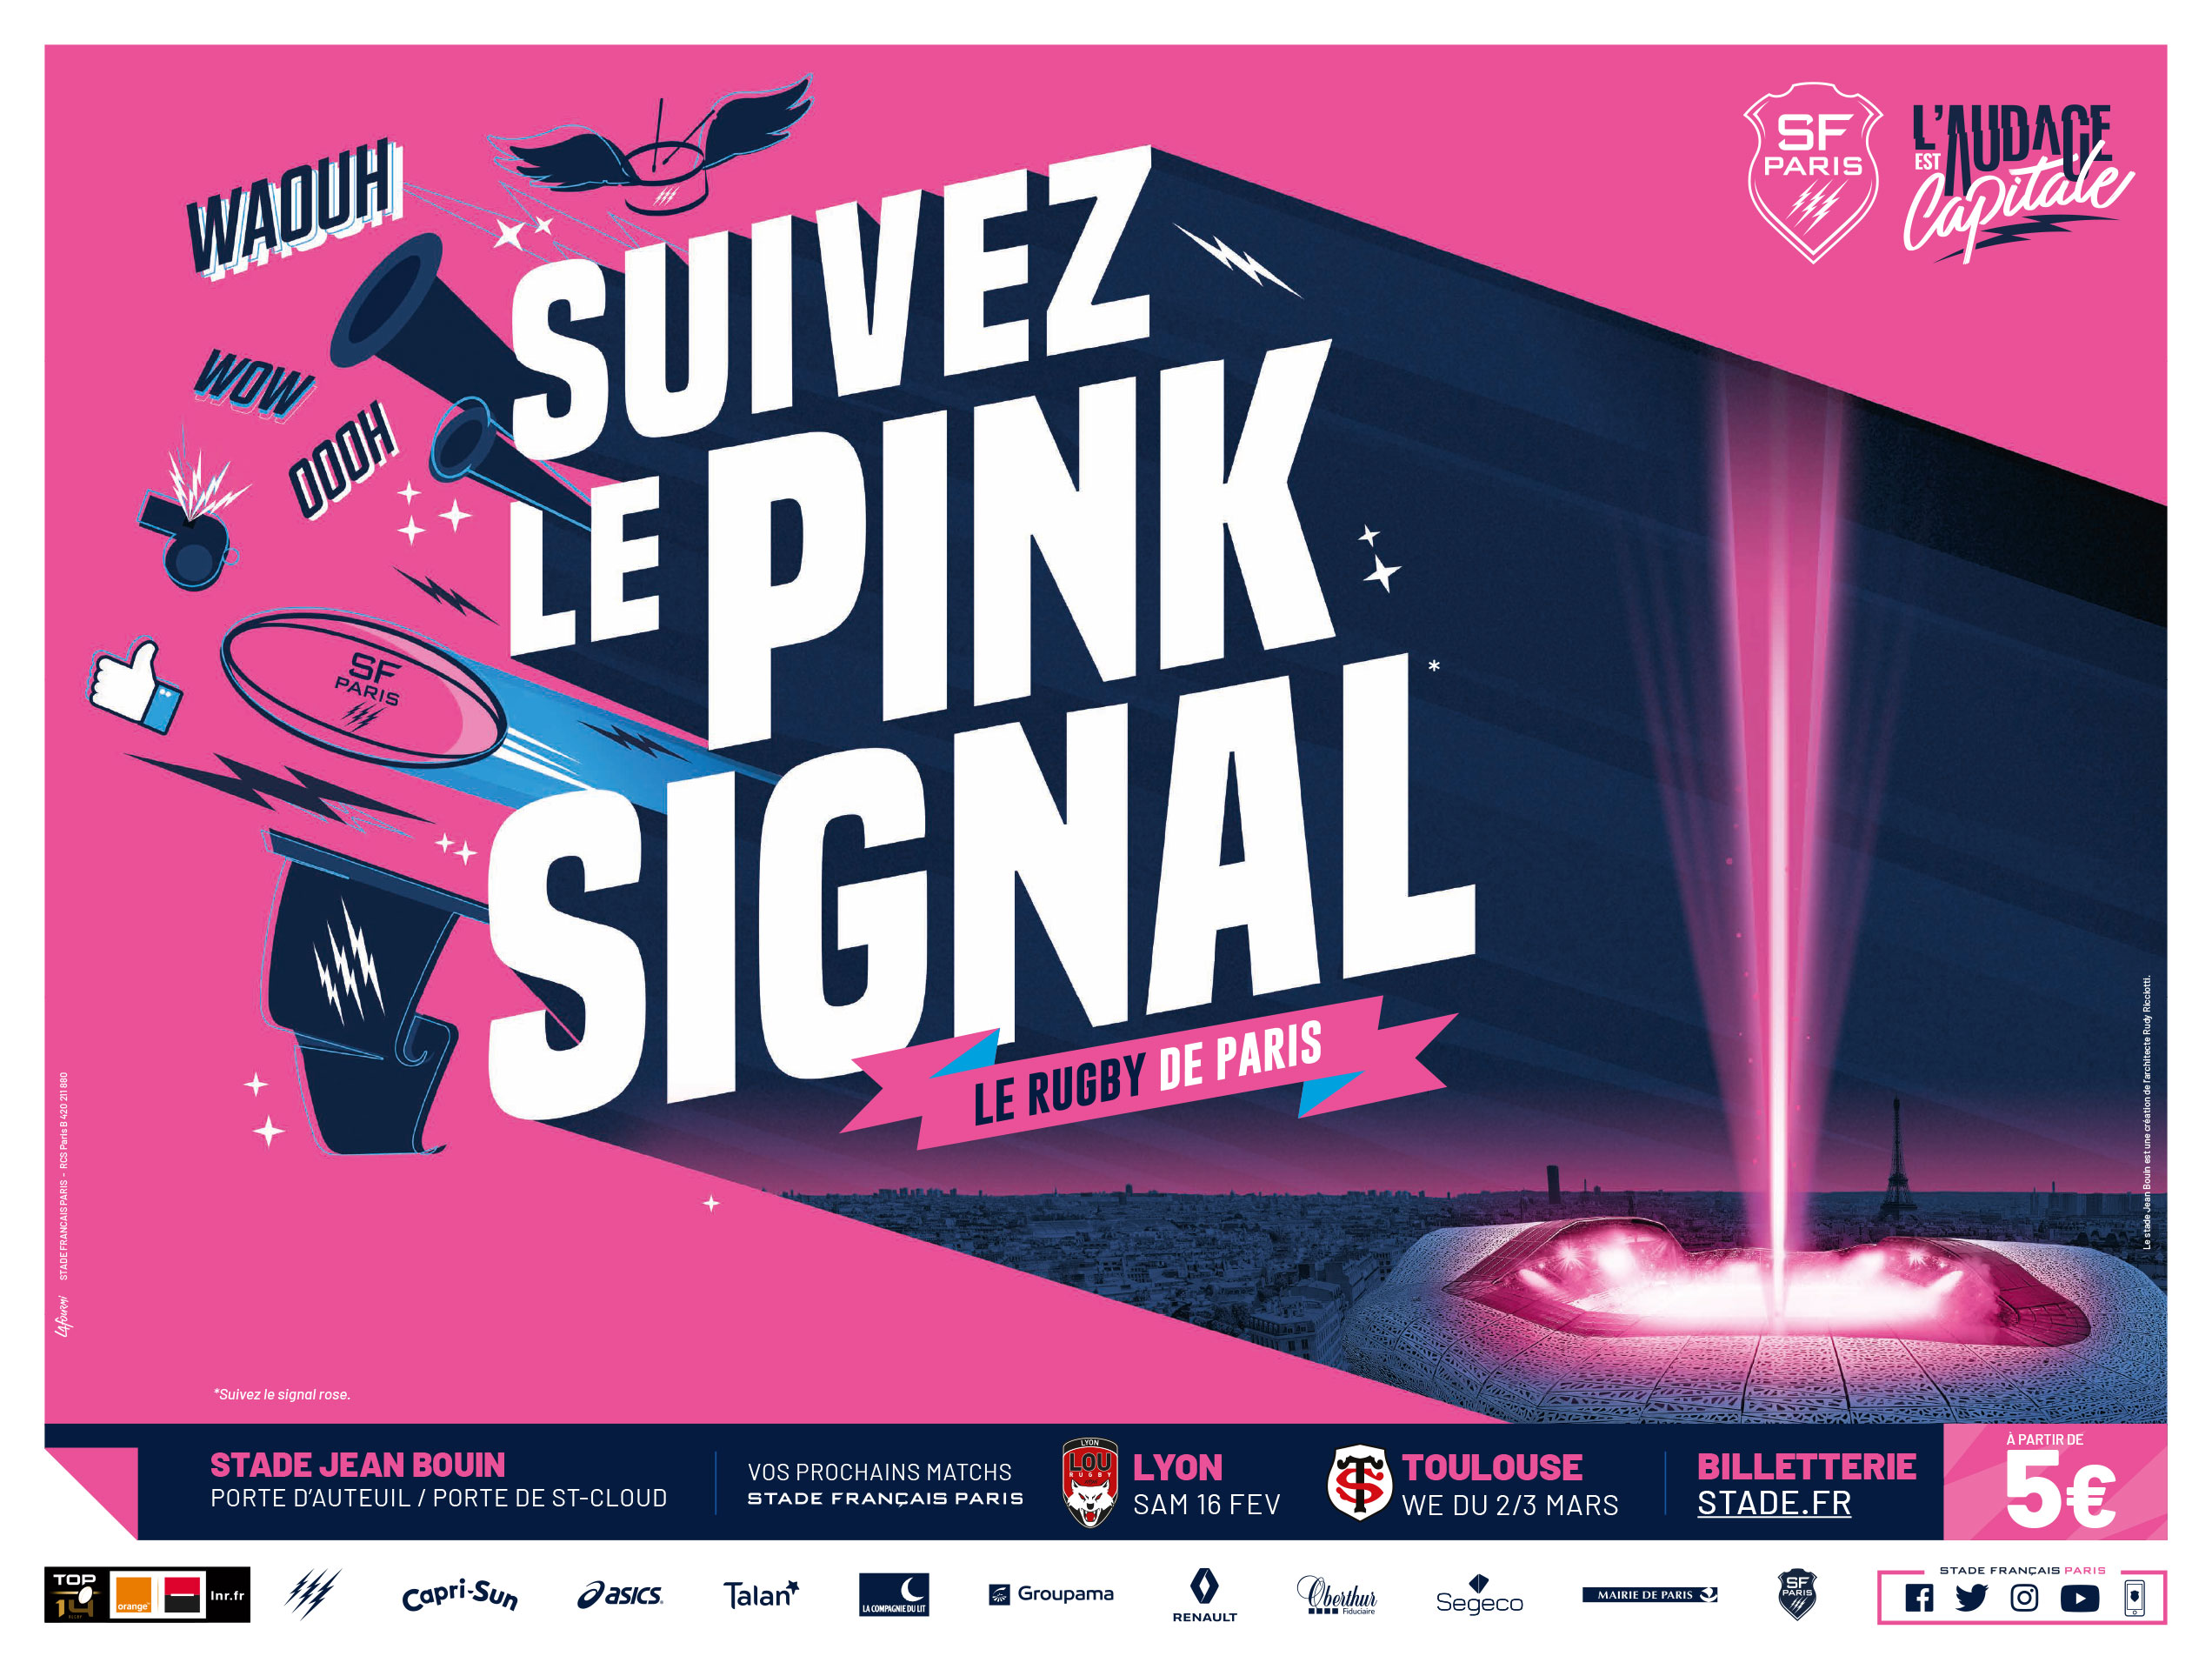 Projet_stade_francais_paris_l_audace_est_capitale_suivez_le_pink_signal